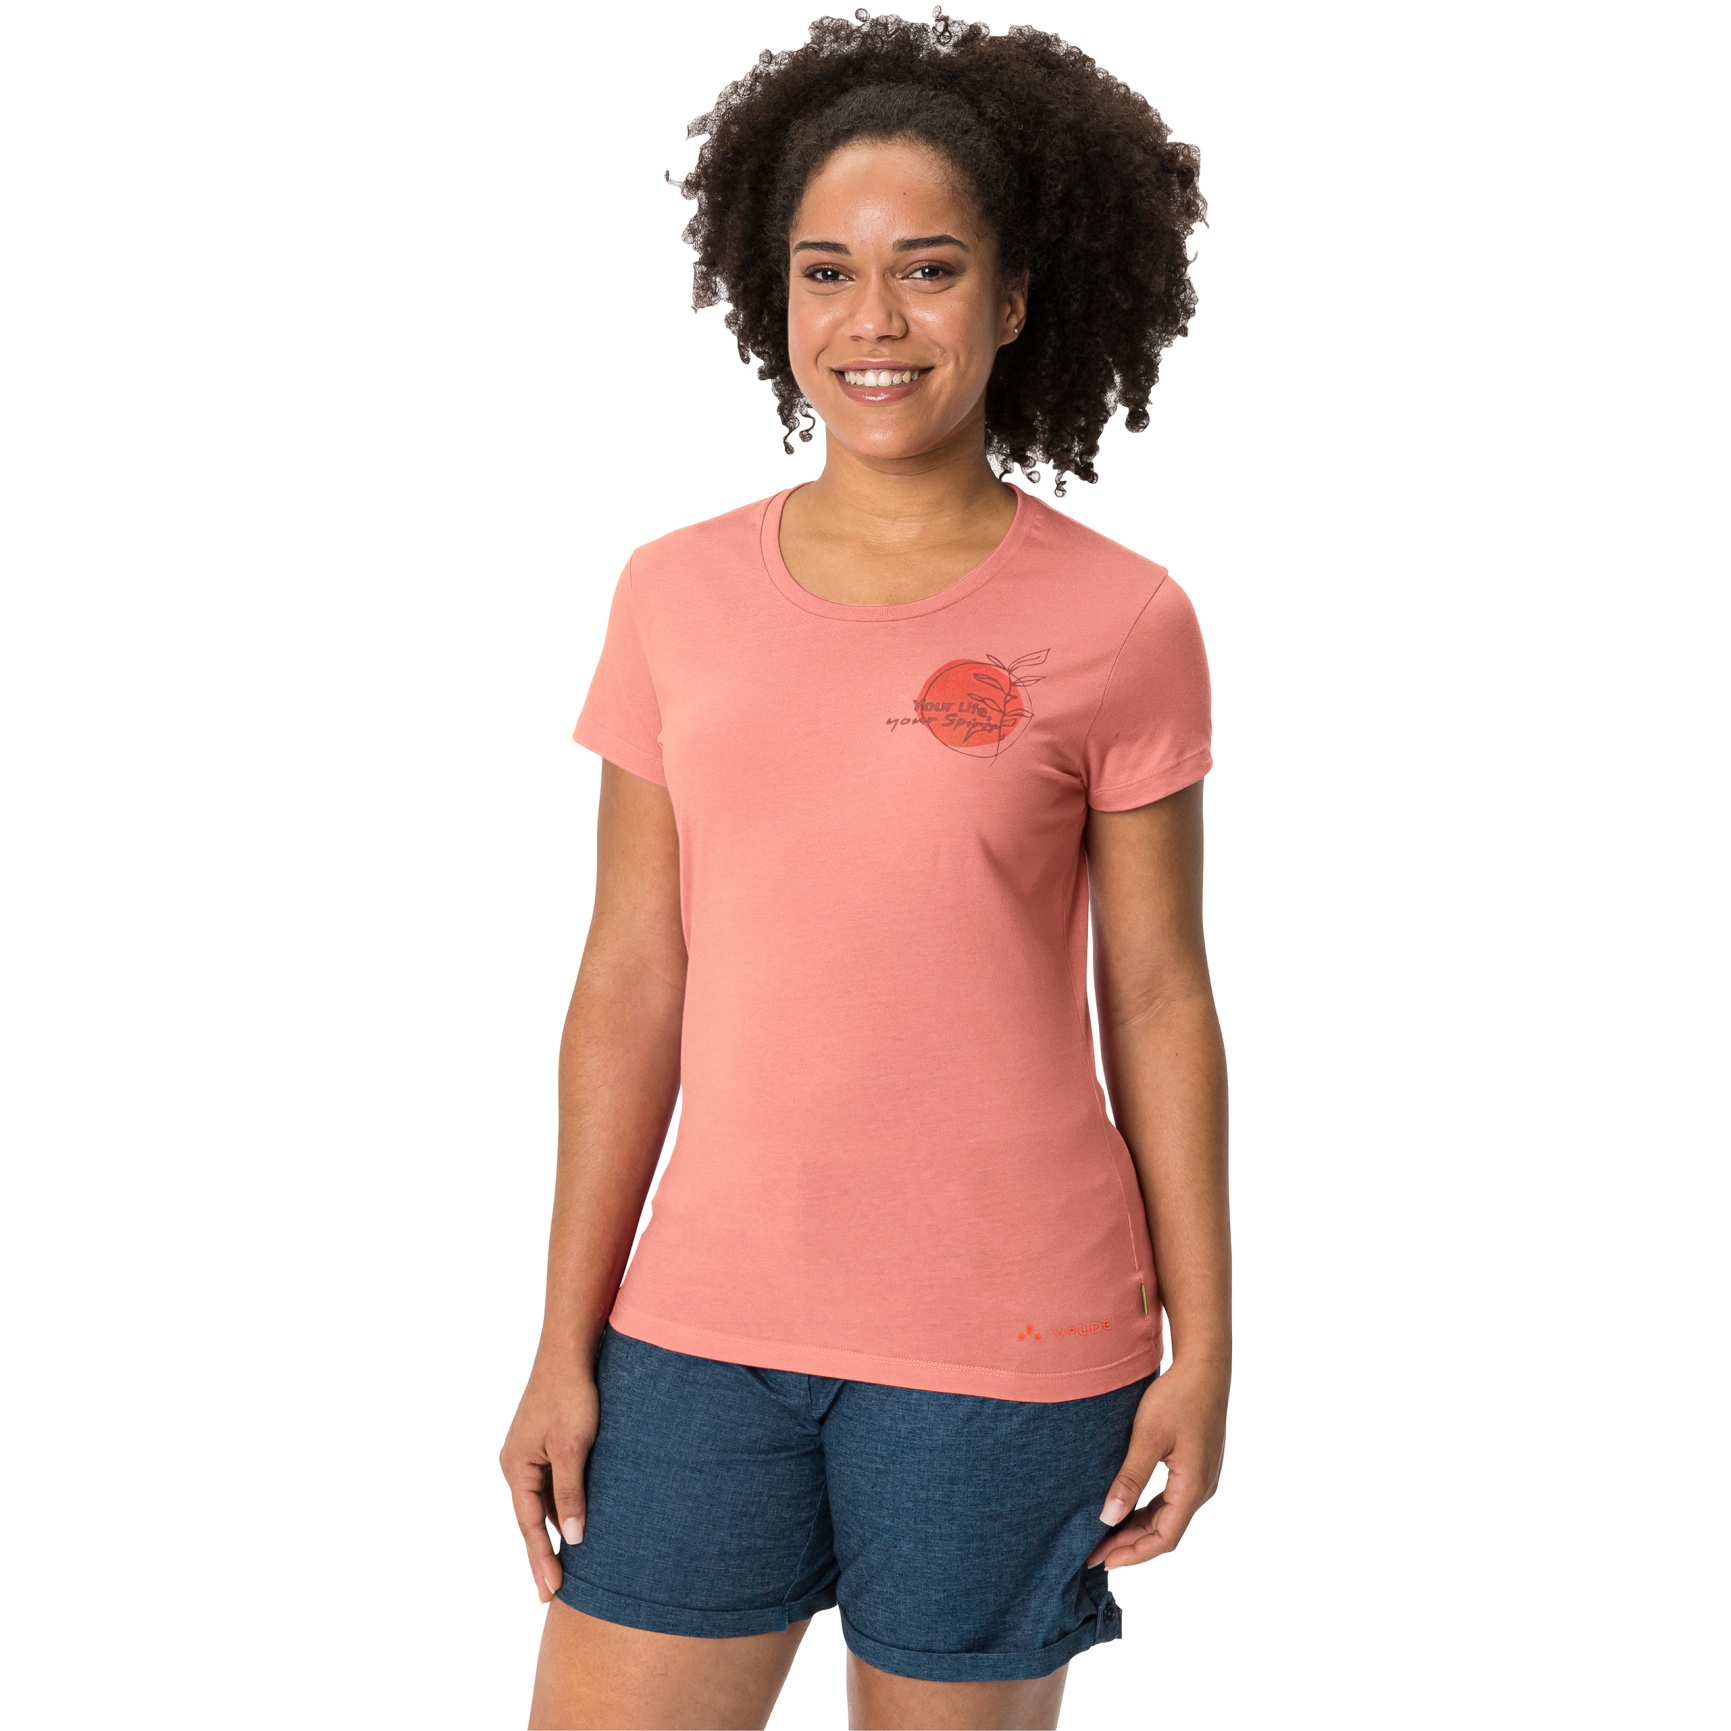 Produktbild von Vaude Spirit Damen T-Shirt - peach